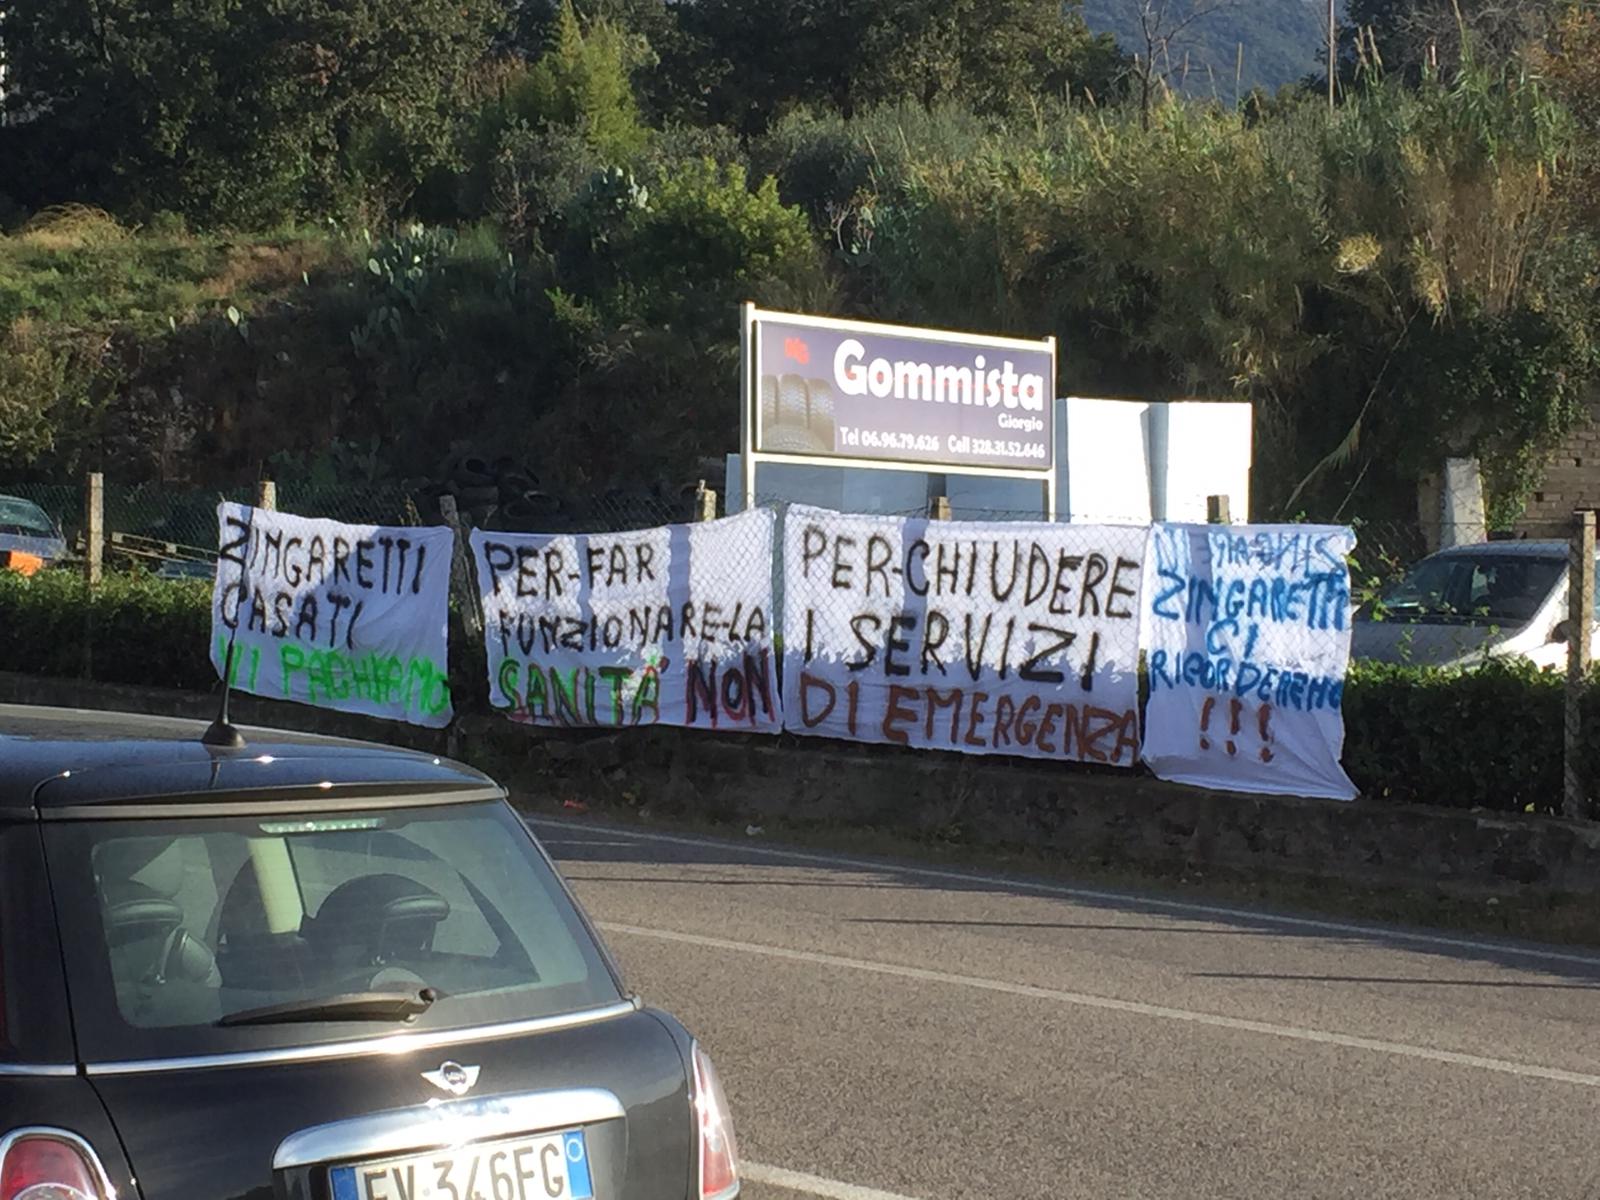 Striscioni di protesta contro Zingaretti e Casati